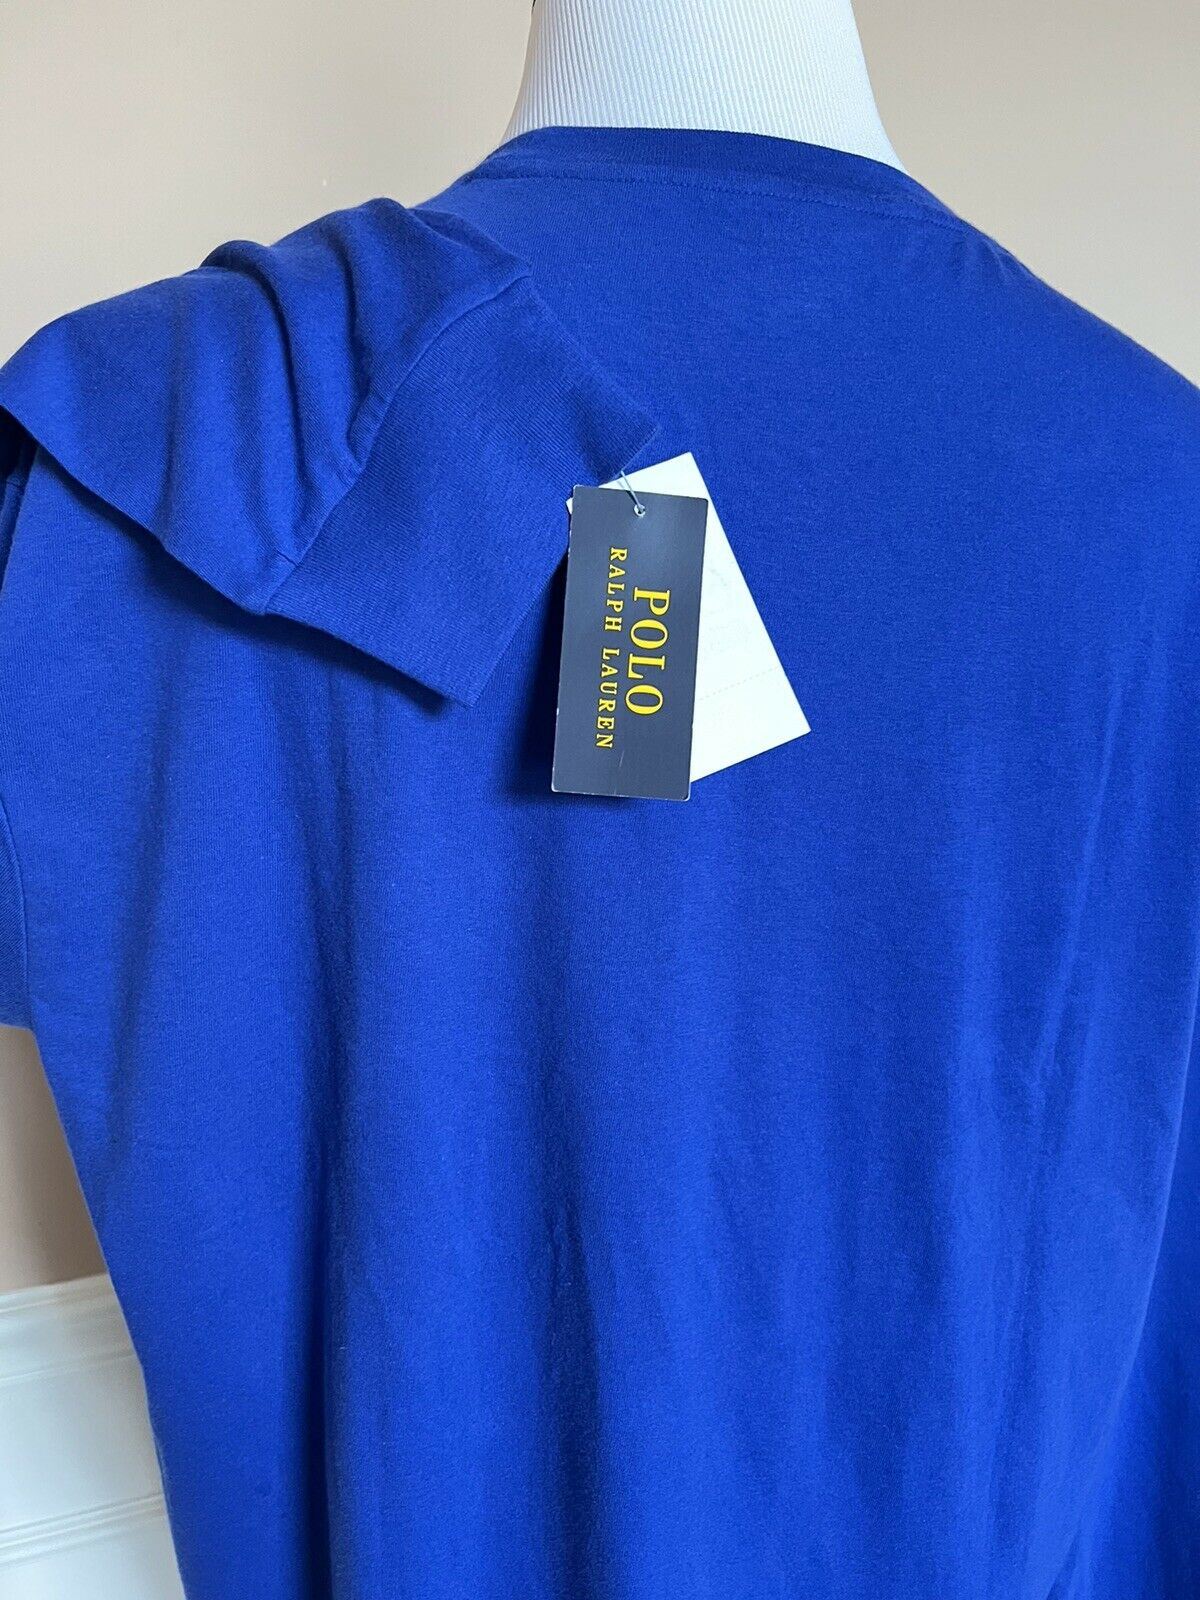 NWT $75 Polo Ralph Lauren Long Sleeve Bear T-Shirt Blue XLT/TGL